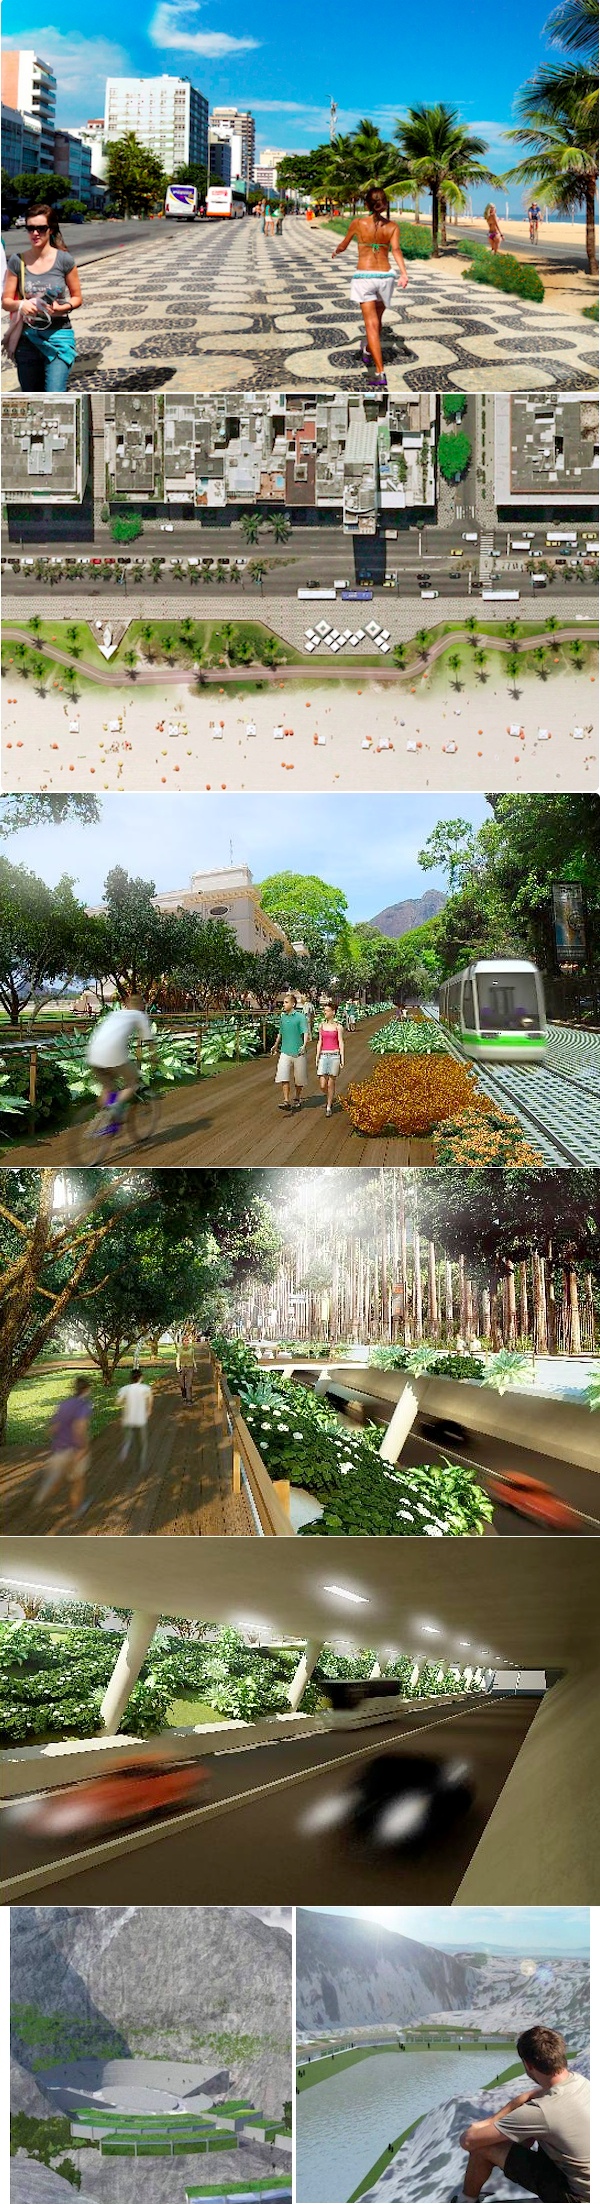 Projetos inscritos no Simplicidades para a orla de Ipanema, o calçadão do Jardim Botânico e a área de lazer no Complexo do Alemão